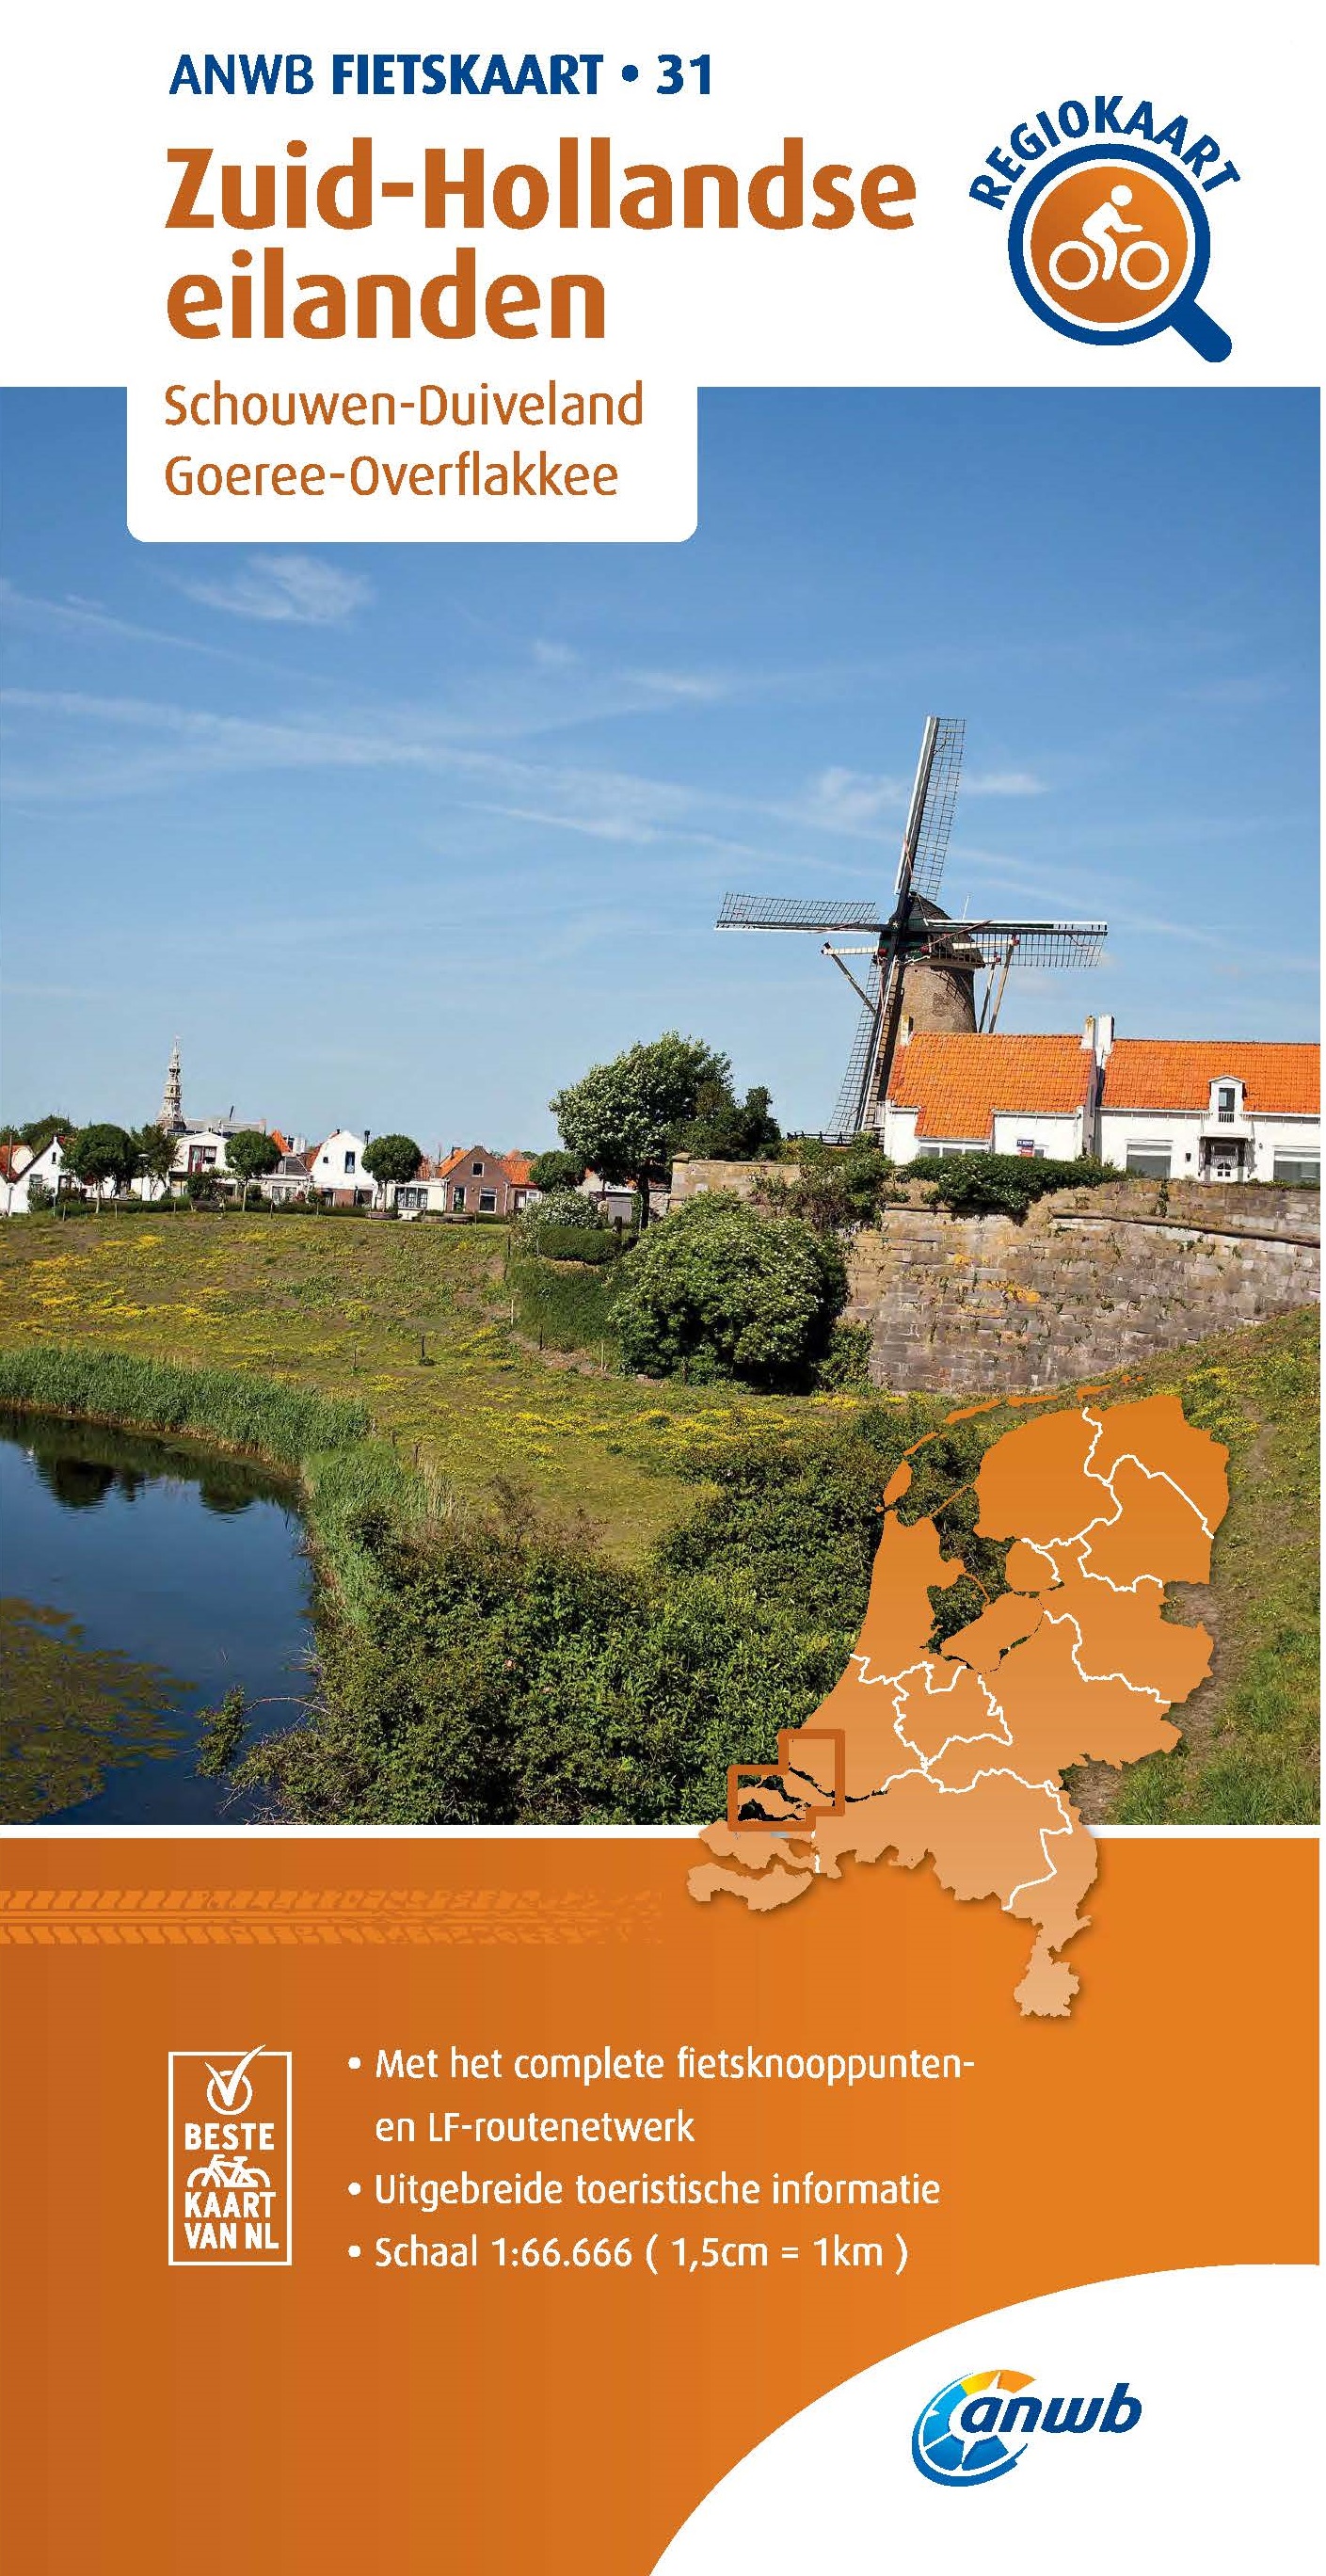 Online bestellen: Fietskaart 31 Regio Fietskaart Zuid-Hollandse eilanden | ANWB Media